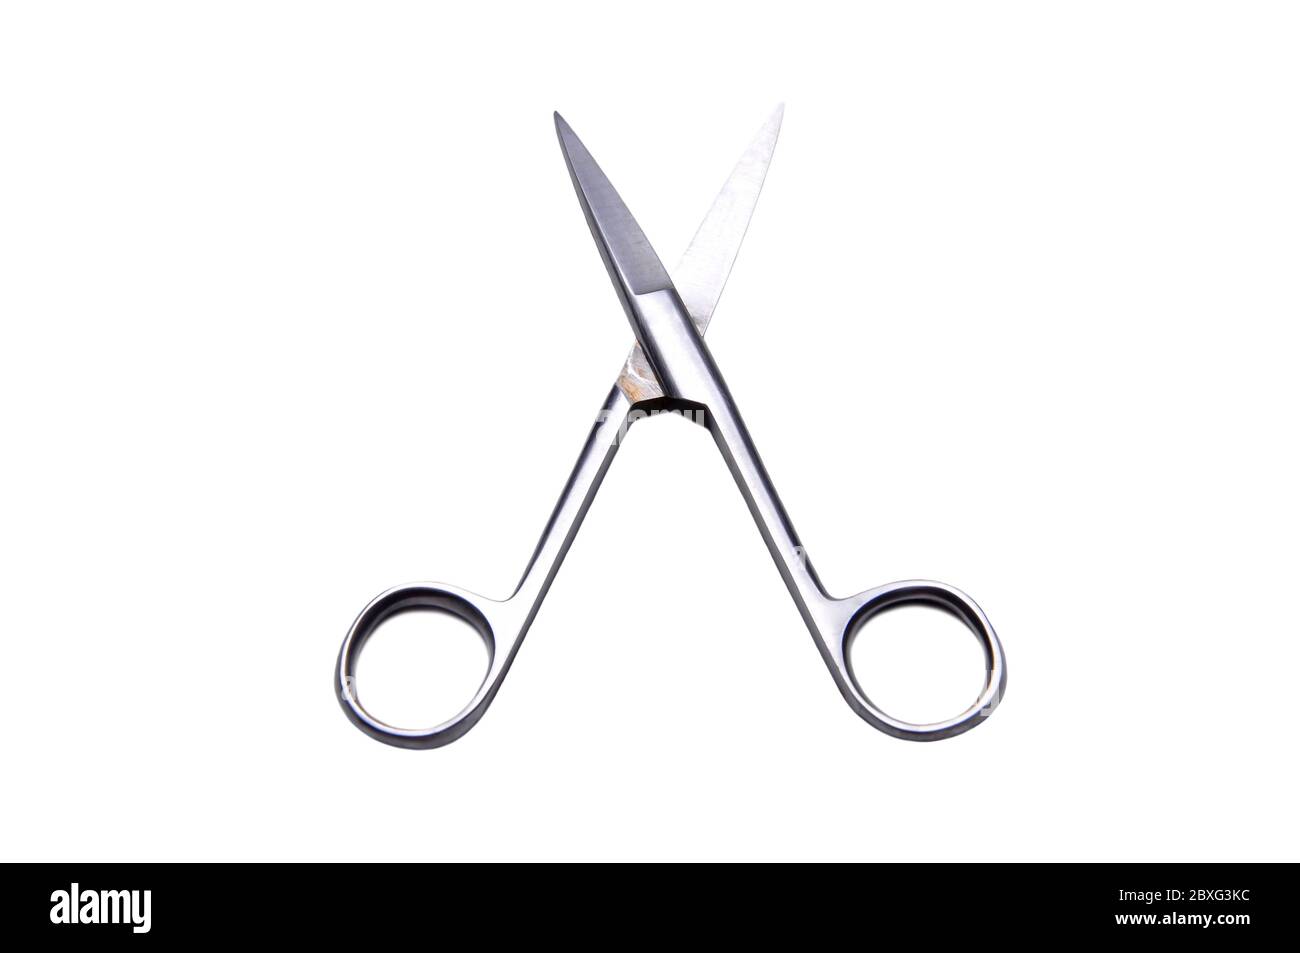 Las tijeras Metzenbaum son tijeras quirúrgicas diseñadas para cortar tejidos  delicados Fotografía de stock - Alamy